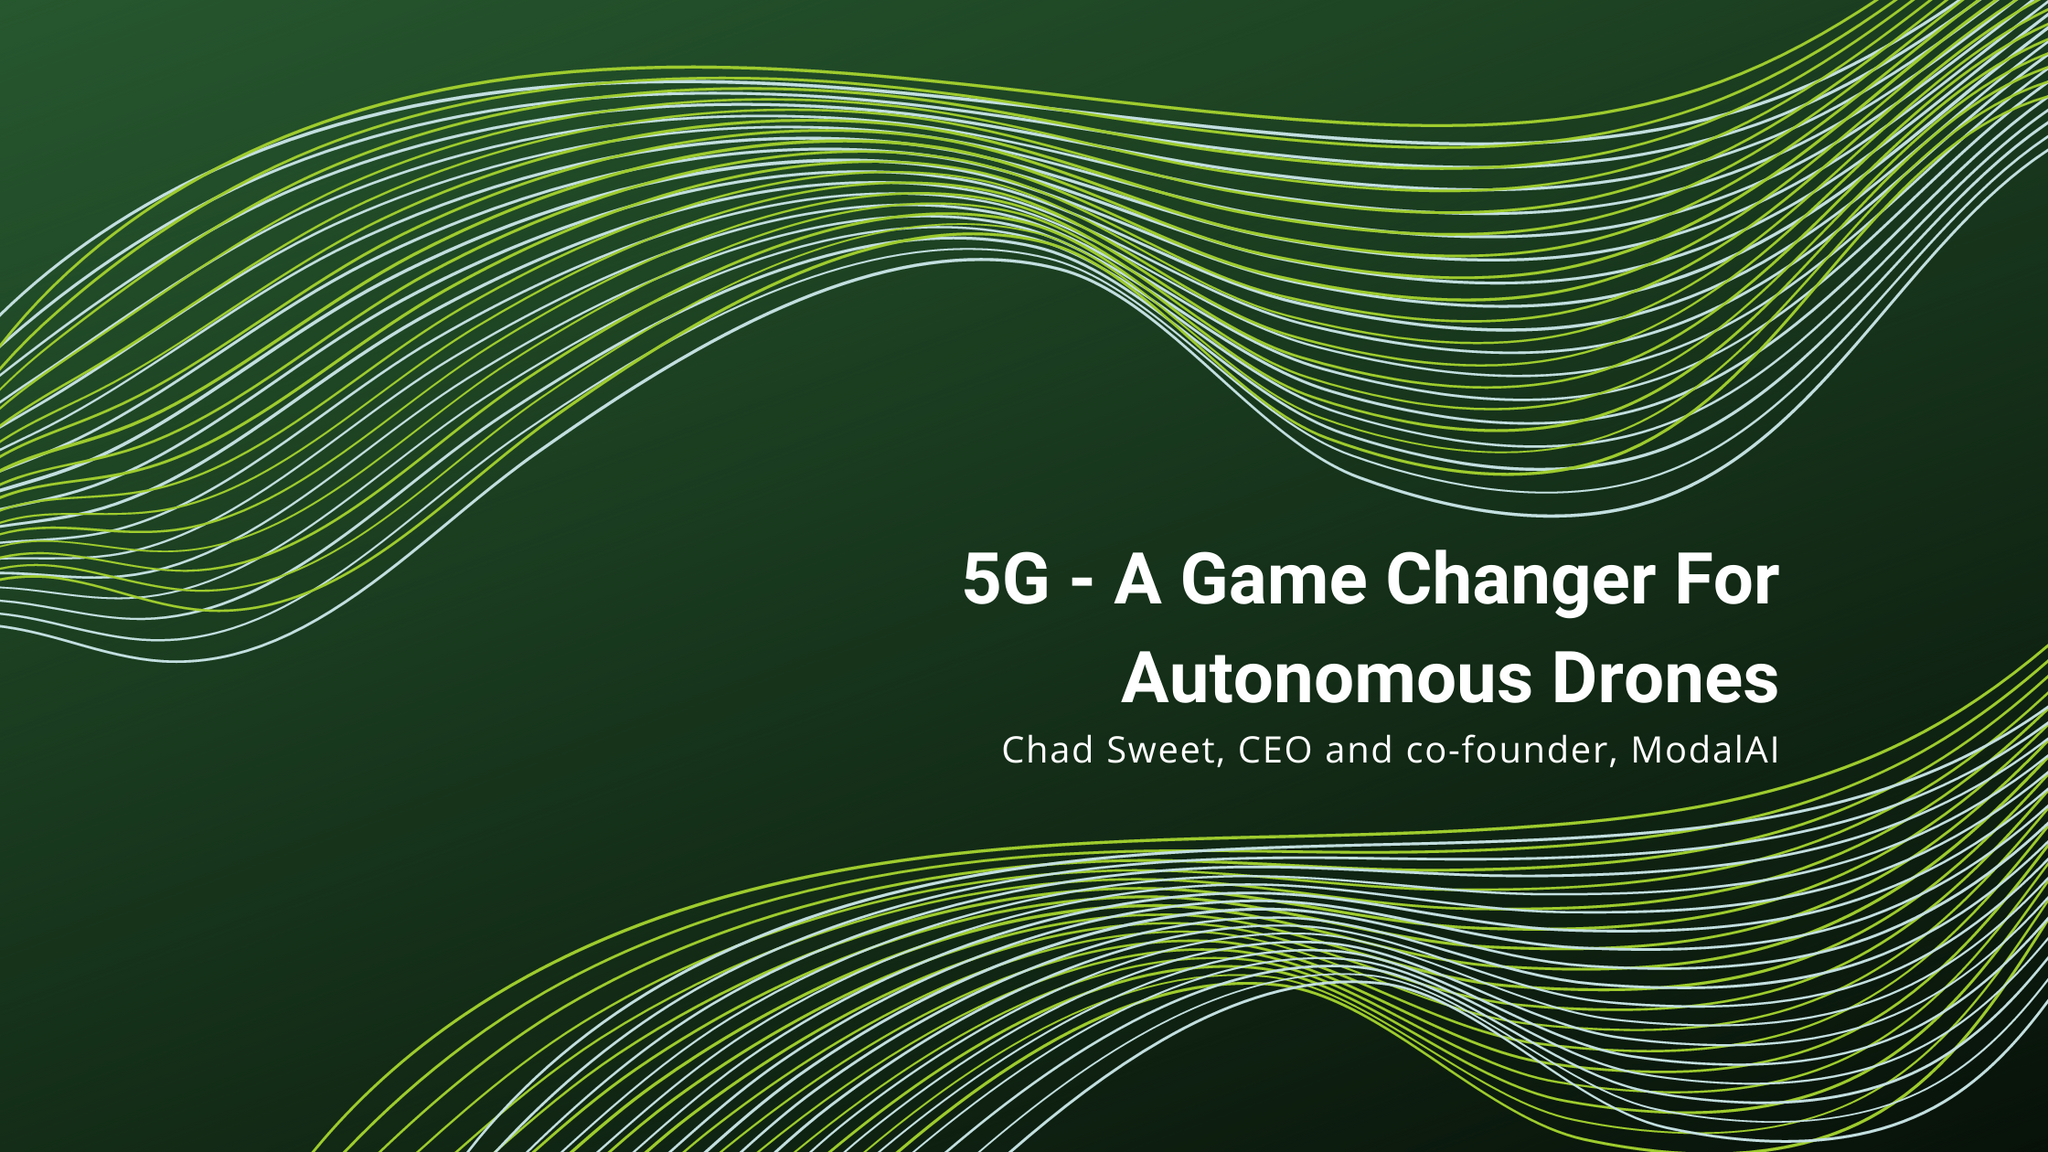 5G - A Game Changer for Autonomous Drones